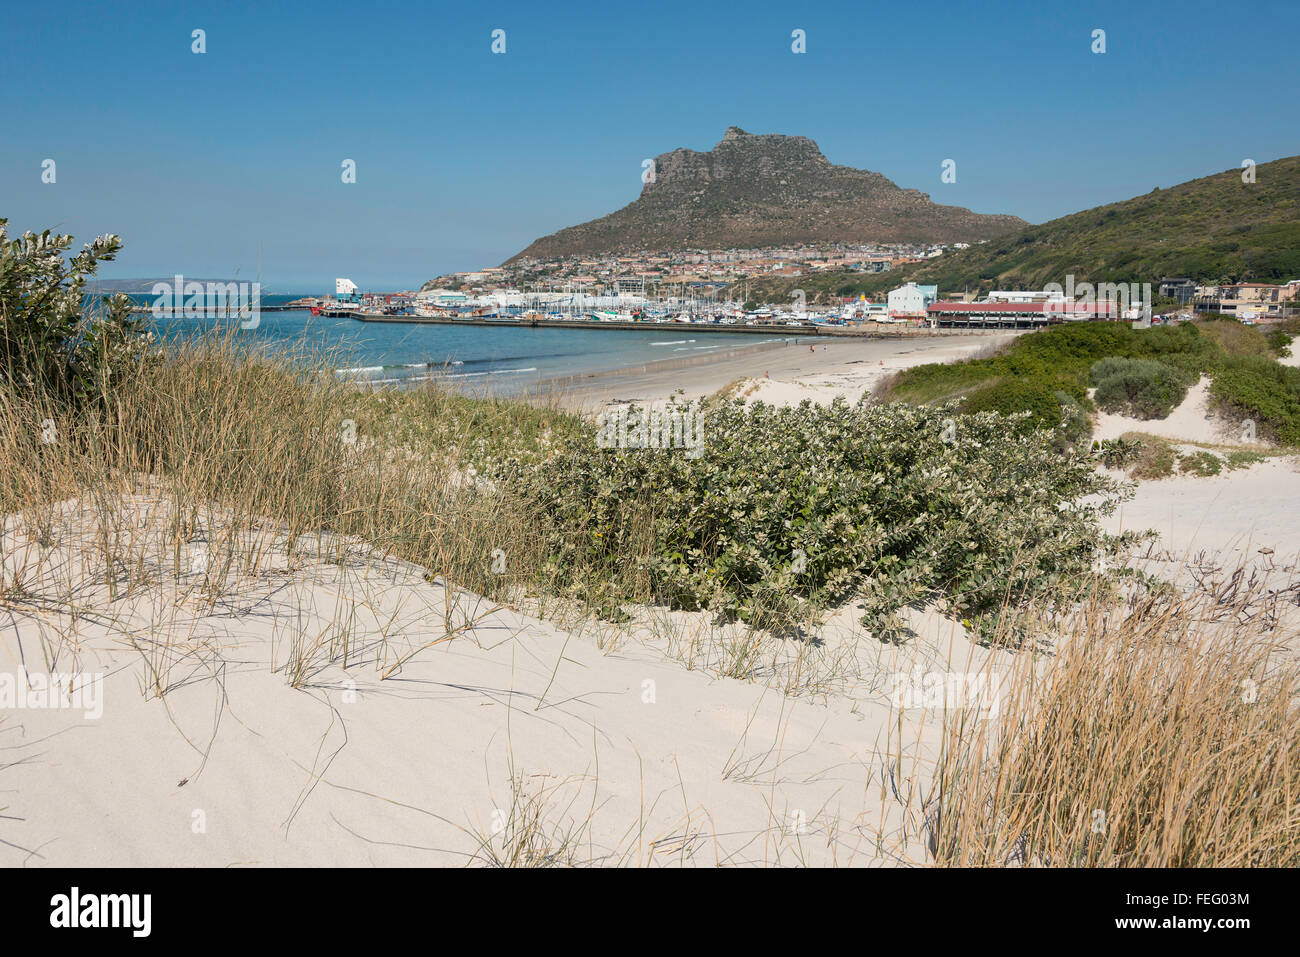 Hout Bay, plage de Hout Bay, péninsule du Cap, ville du Cap, dans l'ouest de la municipalité de la Province du Cap, Afrique du Sud Banque D'Images